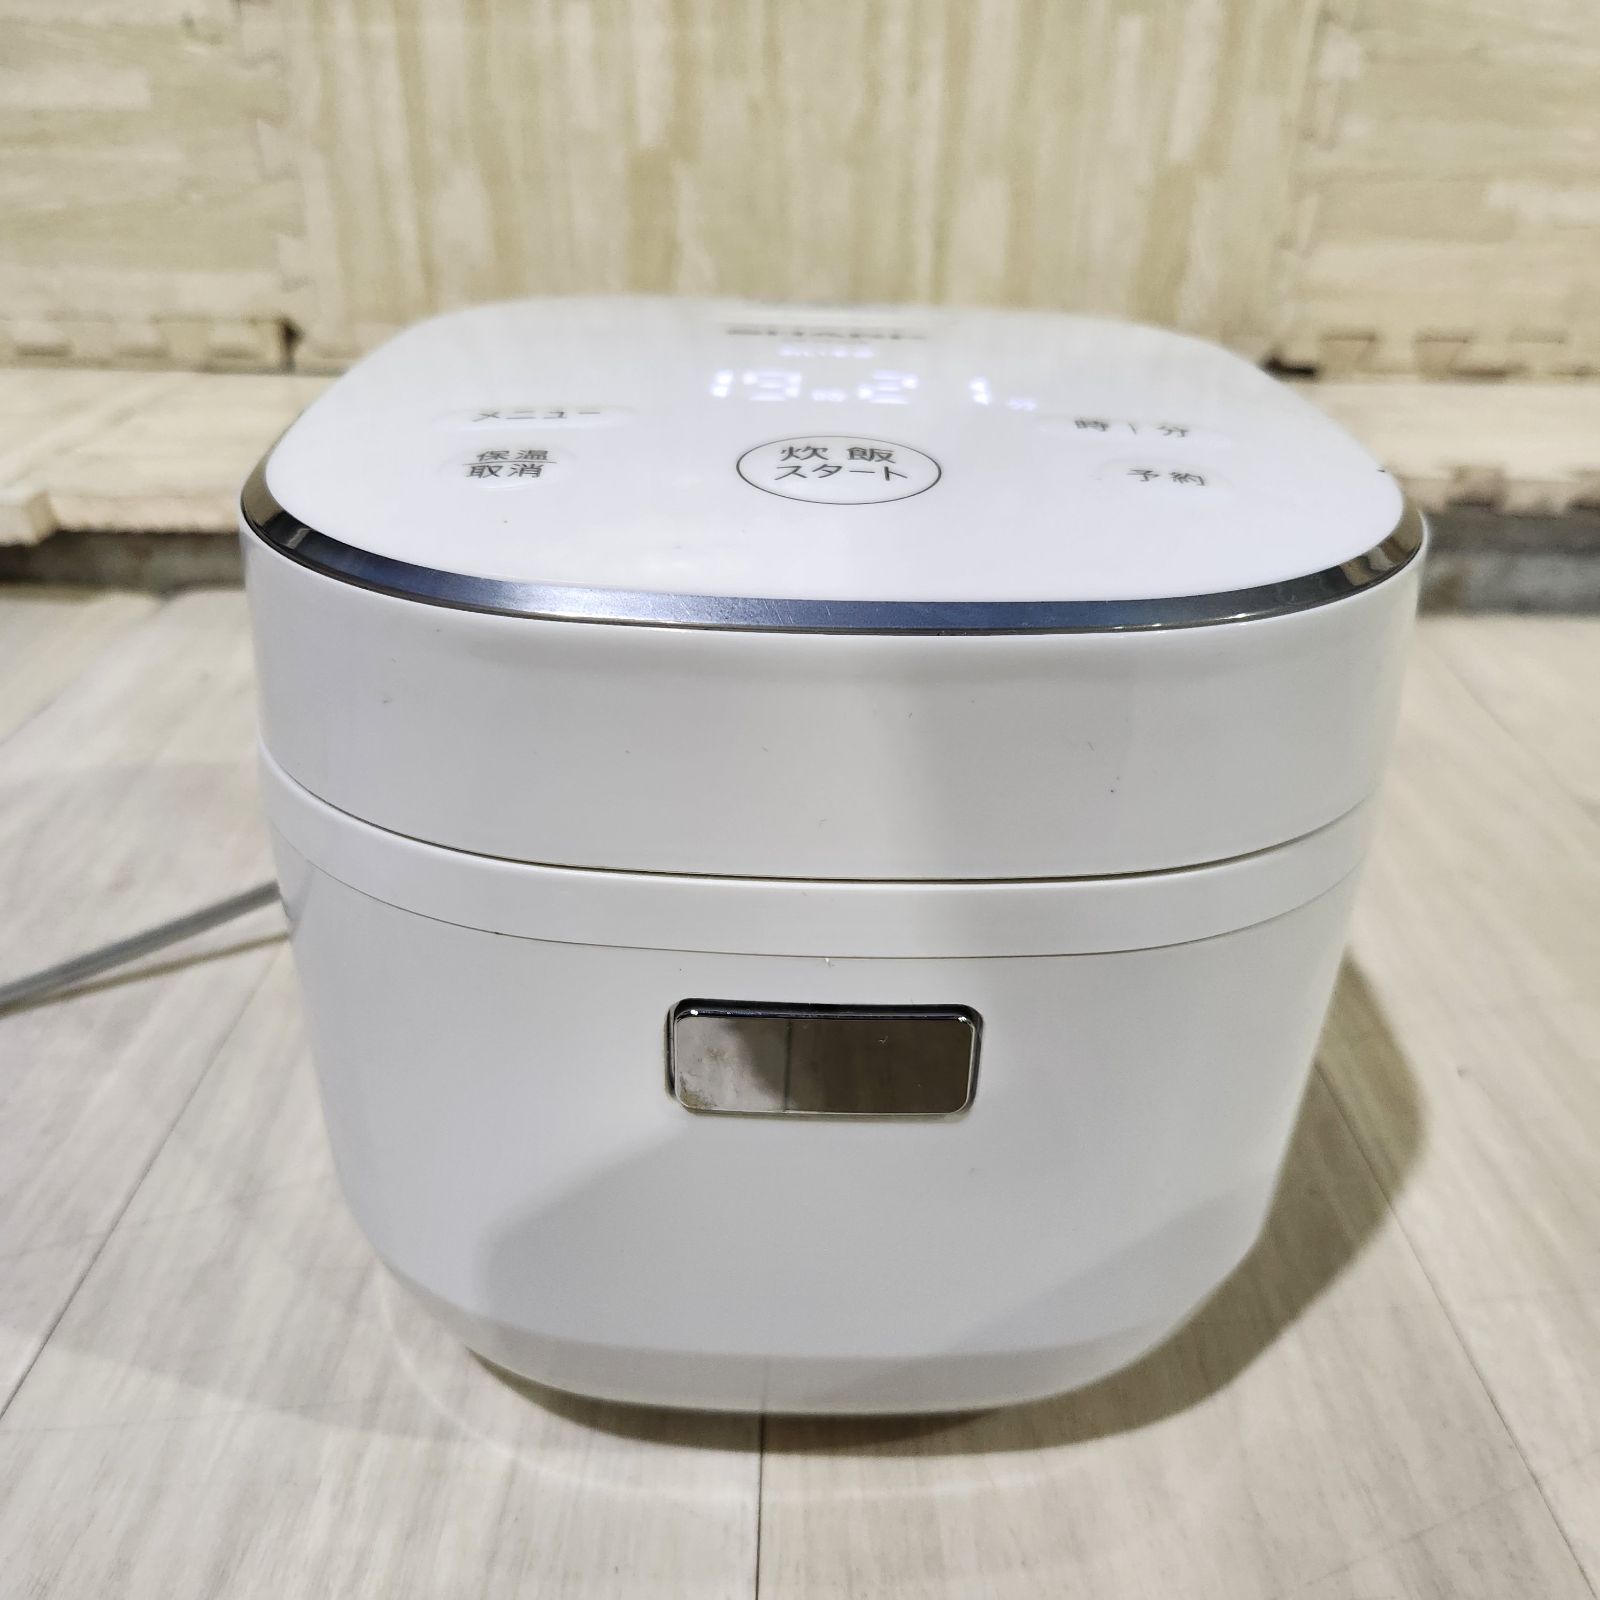 SHARP ジャー炊飯器 KS-CF05A-W 2019年製 3合炊き